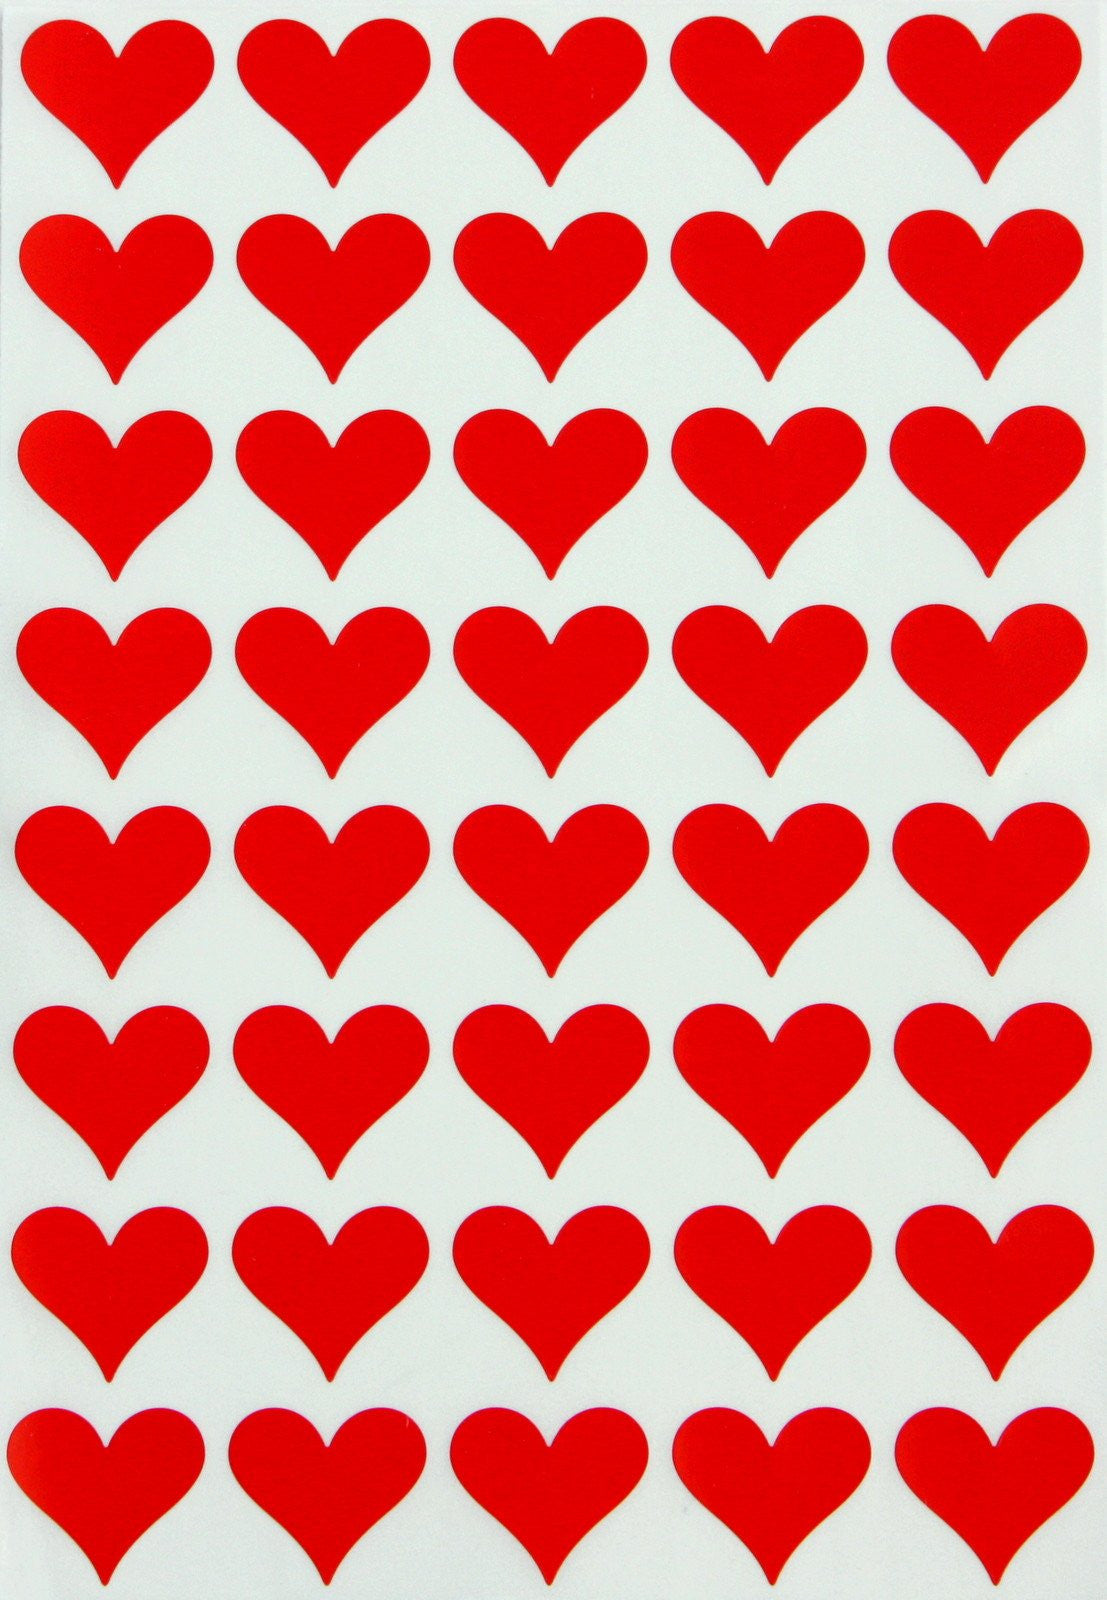 Valentine Love Heart Stickers Wholesale sticker supplier Valentine